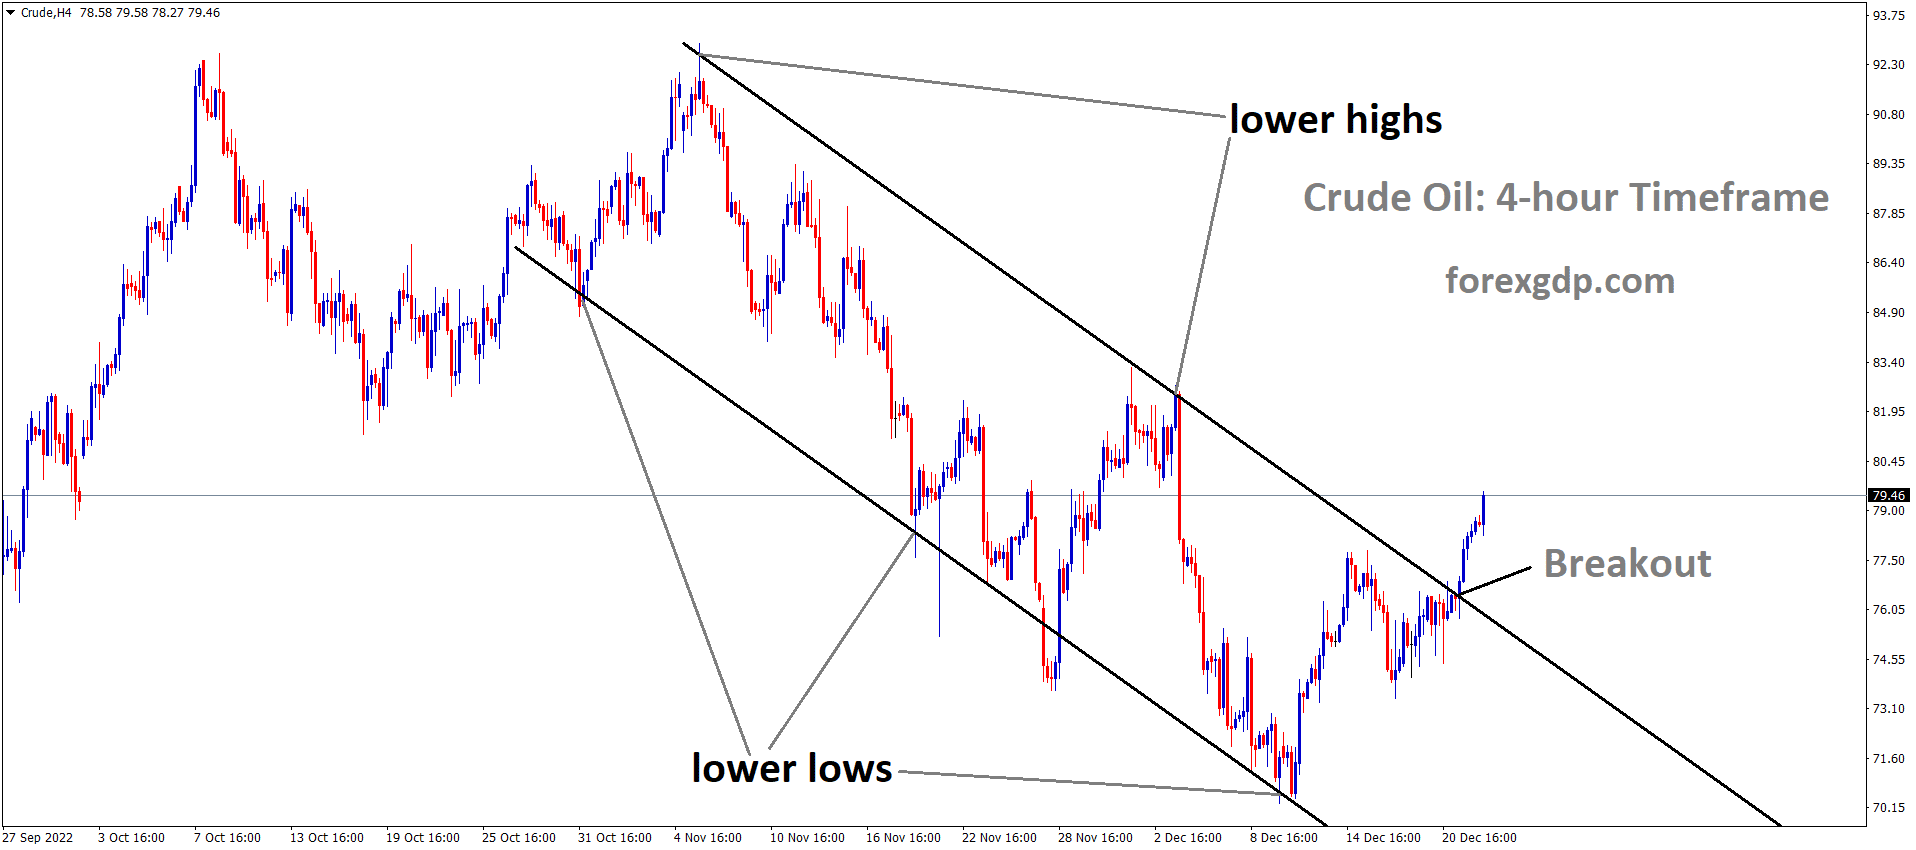 Crude Oil has broken the Descending channel in Upside 1